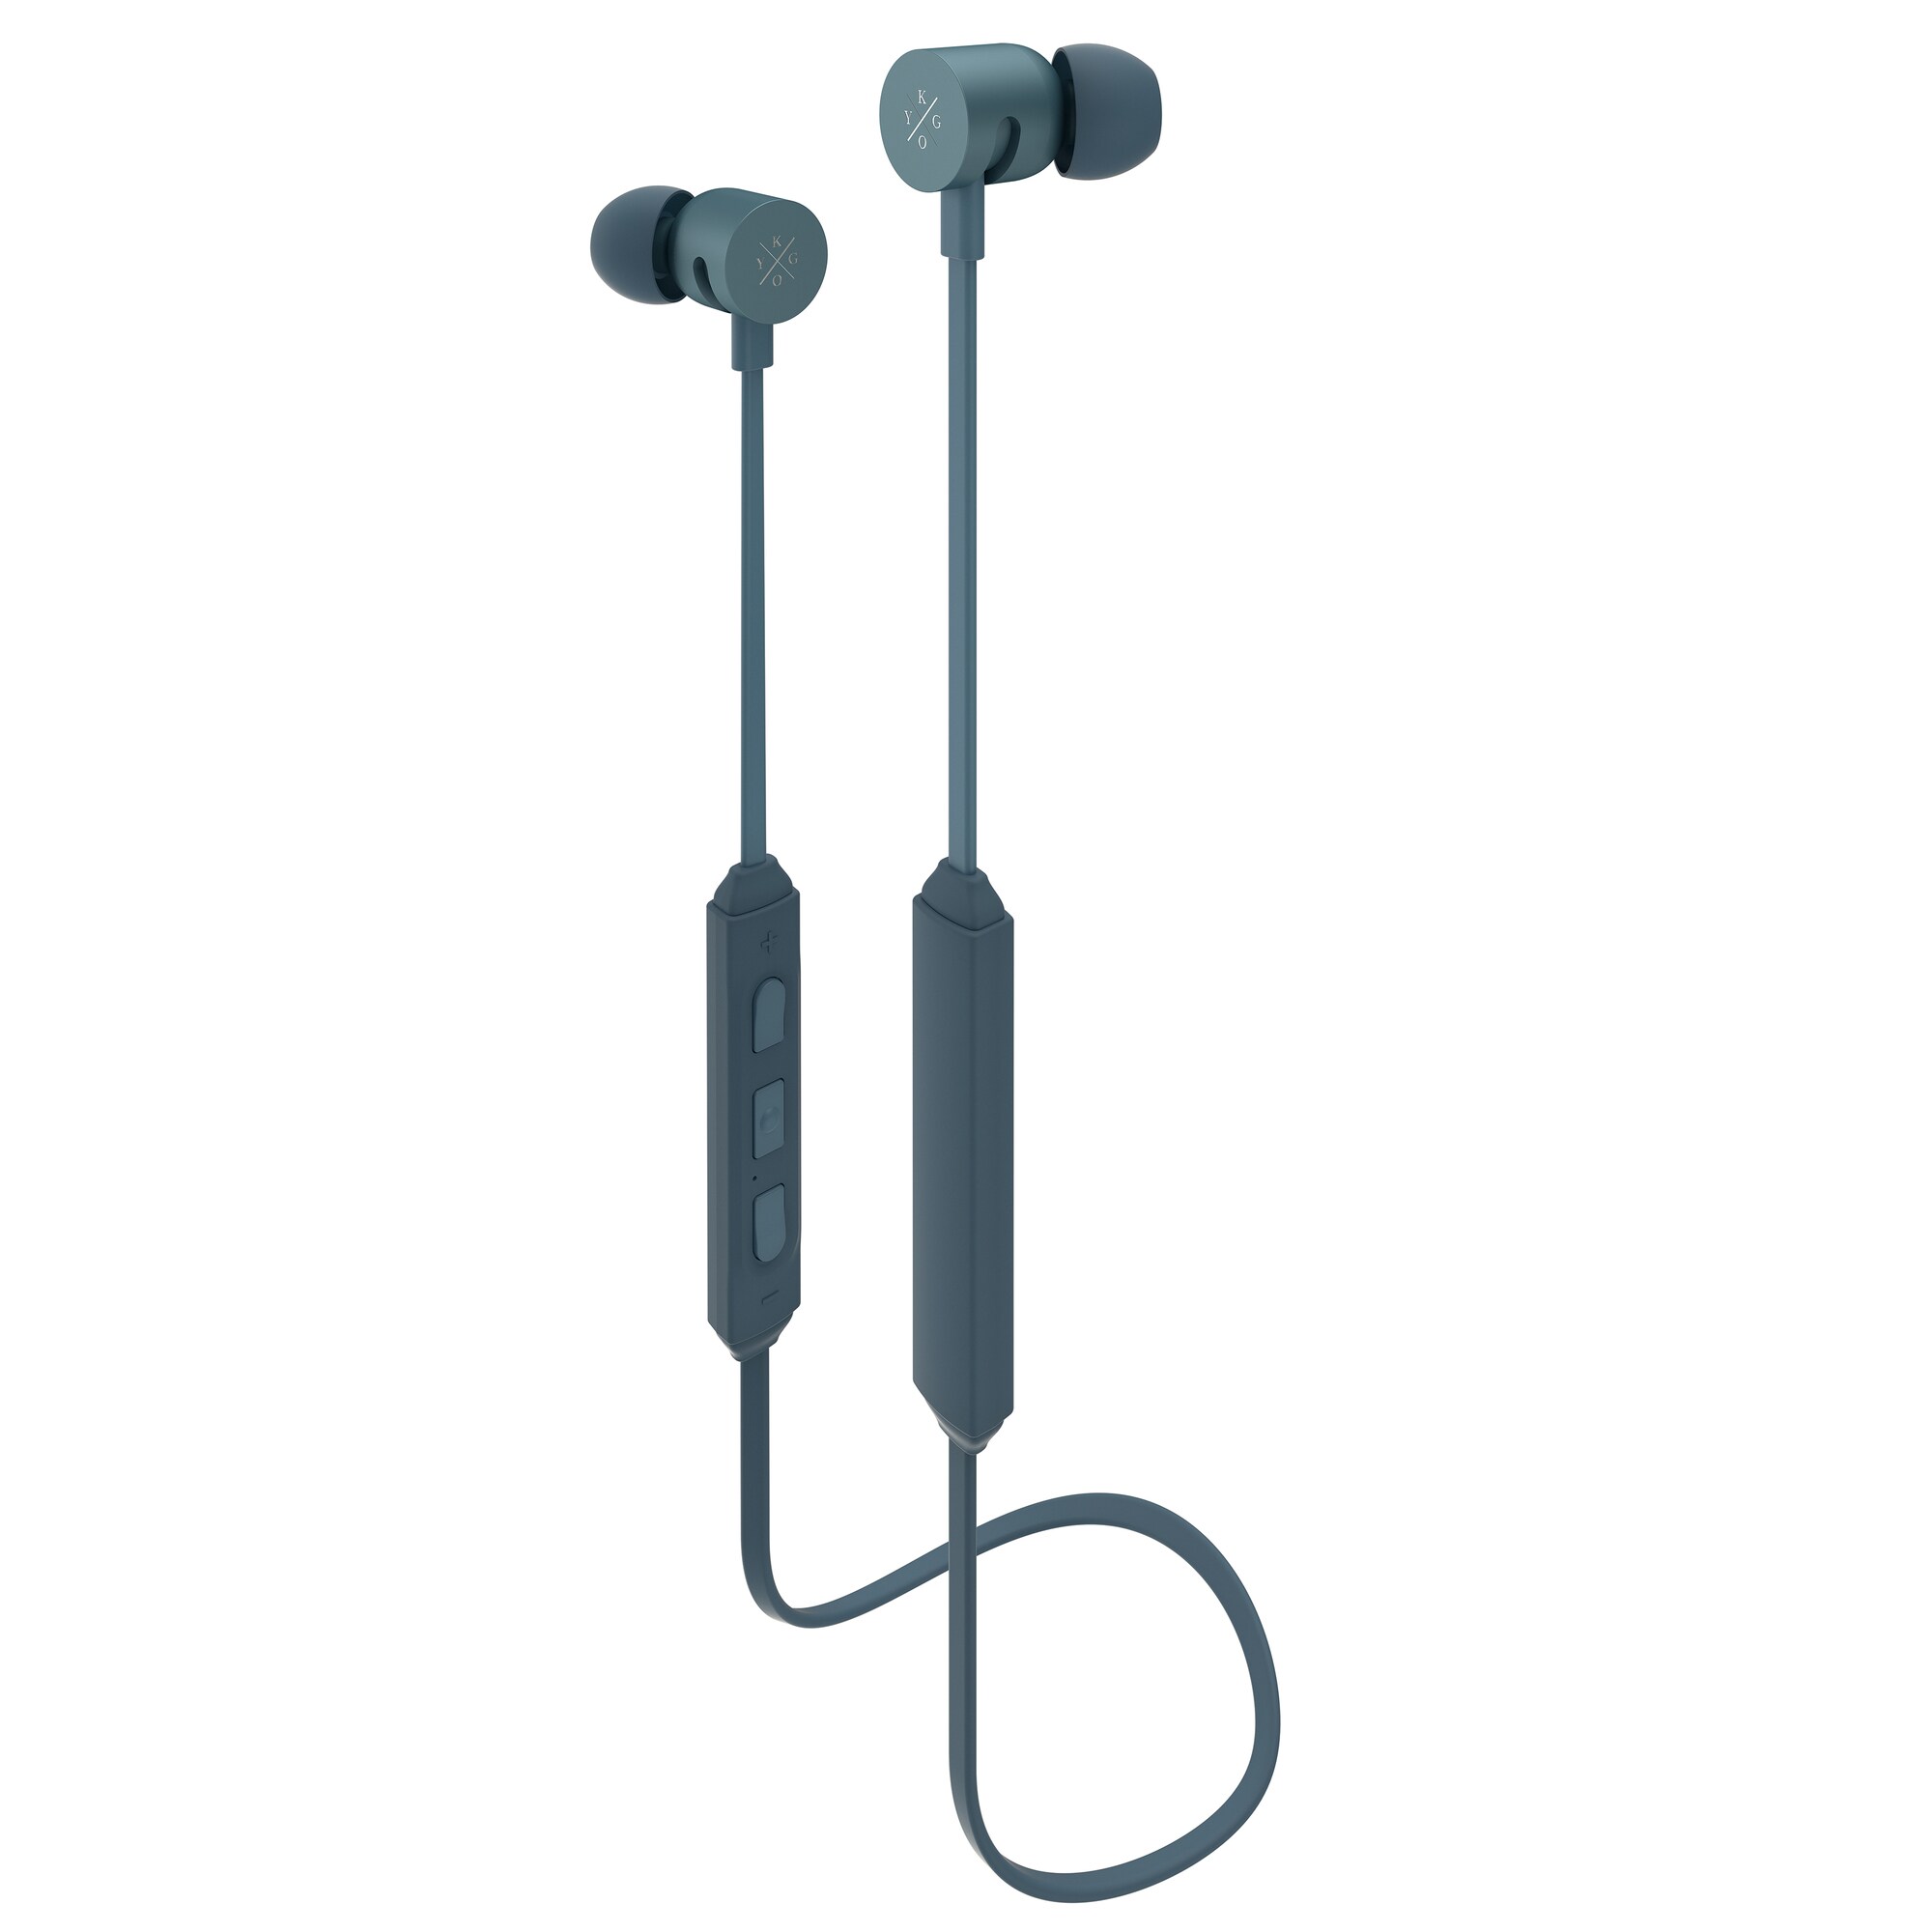 Kygo E4/600 trådløse in-ear hodetelefoner (stormgrå) - Elkjøp